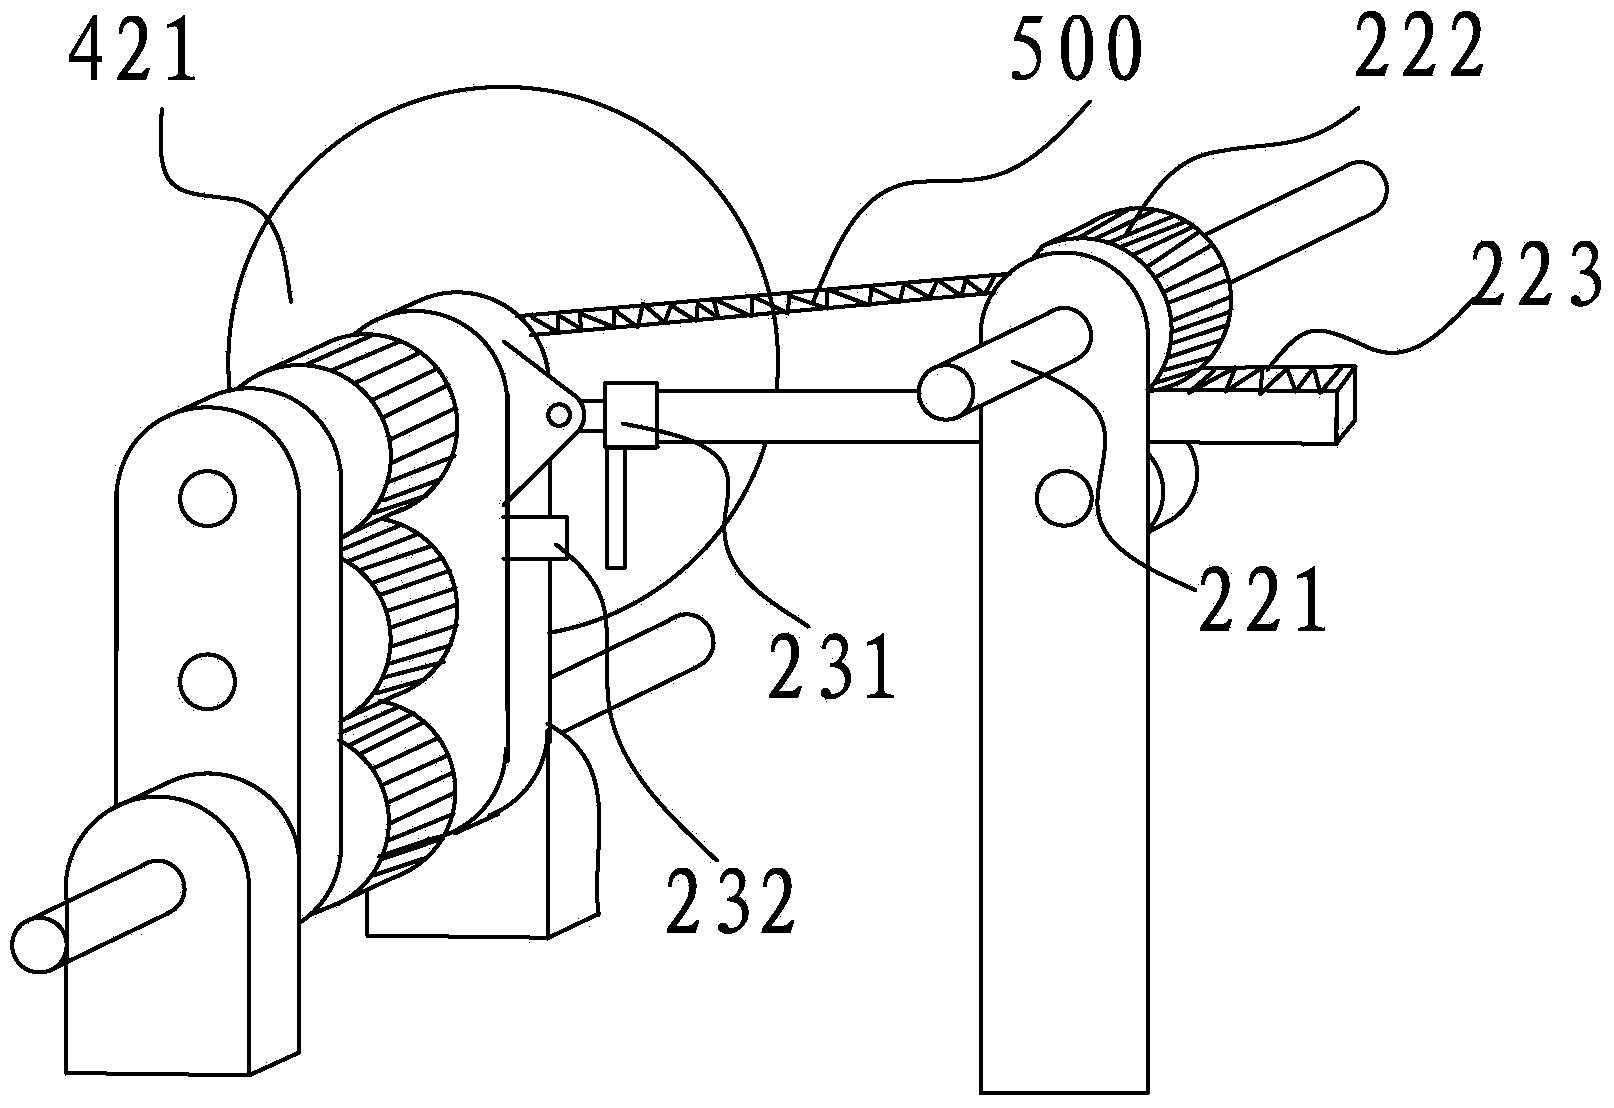 Multi-head pipe cutter